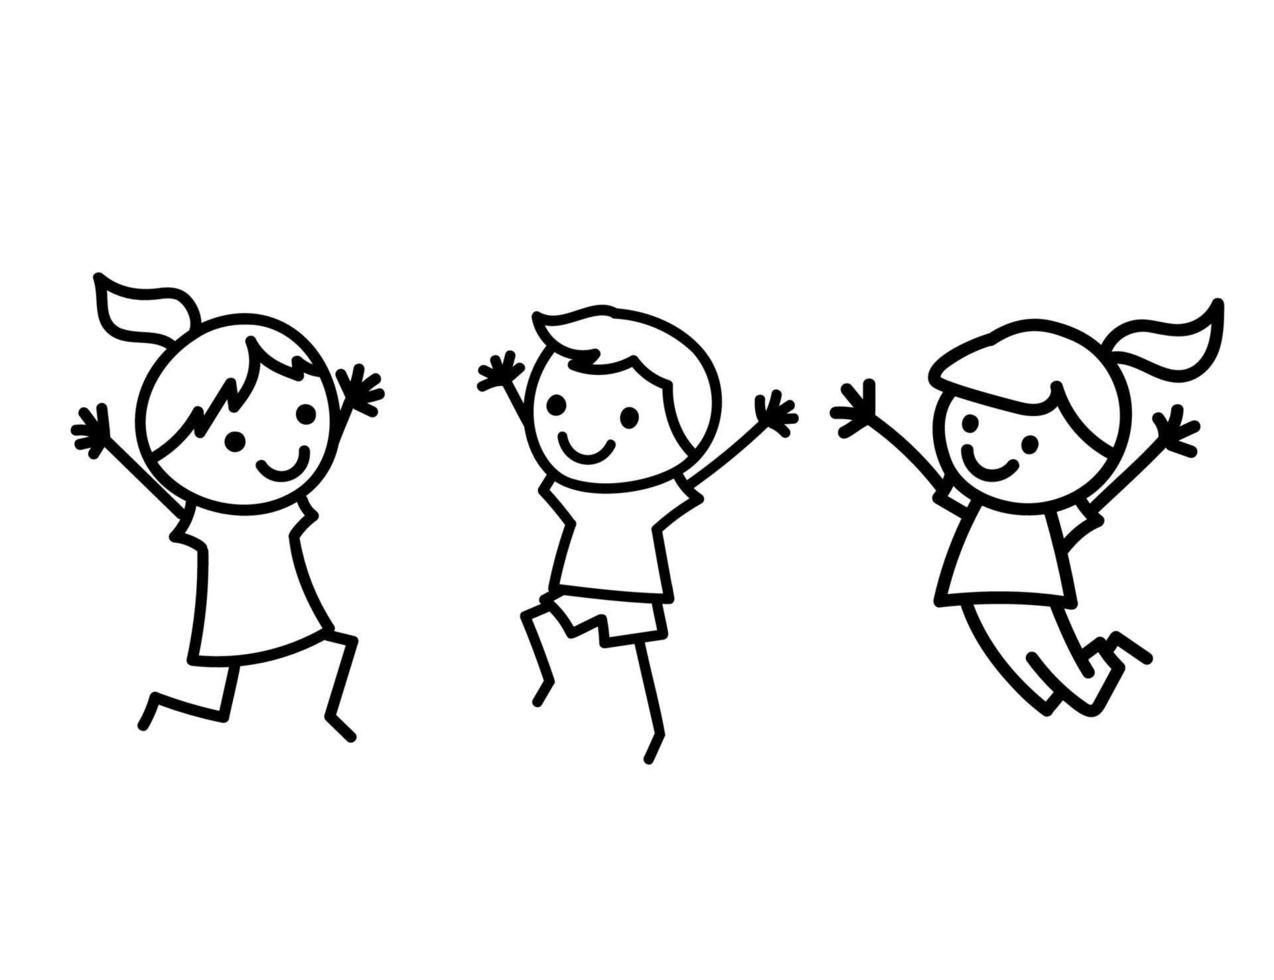 Reihe von Doodle-Kinderfiguren. süße Stockjungen und -mädchen springen. vektorillustration lokalisiert auf weiß vektor